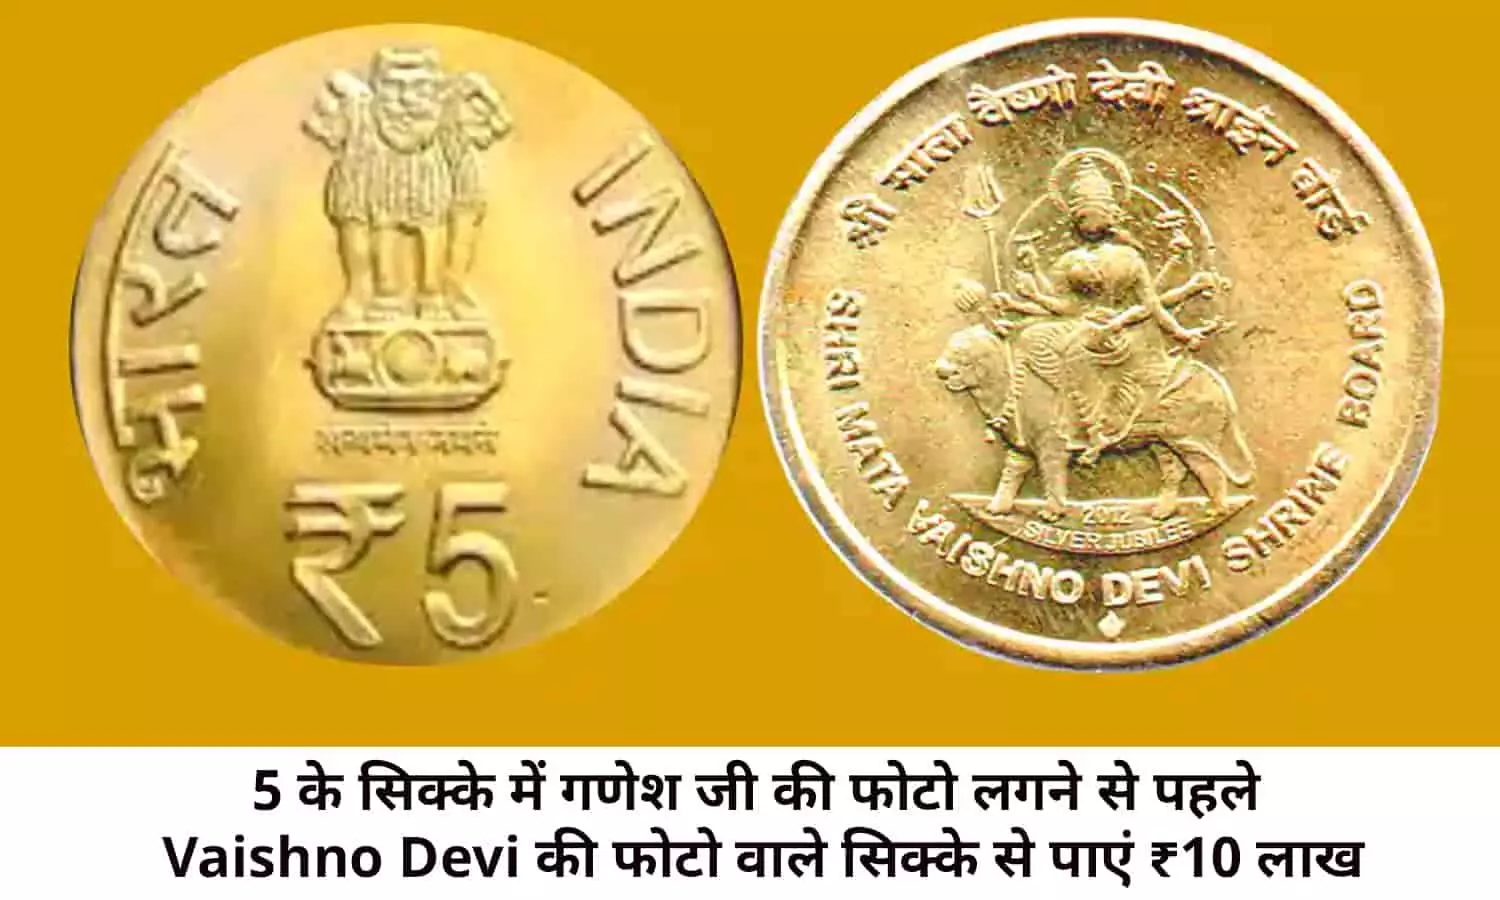 Old Notes And Coin Selling In Hindi 2022: 5 के सिक्के में गणेश जी की फोटो लगने से पहले Vaishno Devi की फोटो वाले सिक्के से पाएं ₹10 लाख